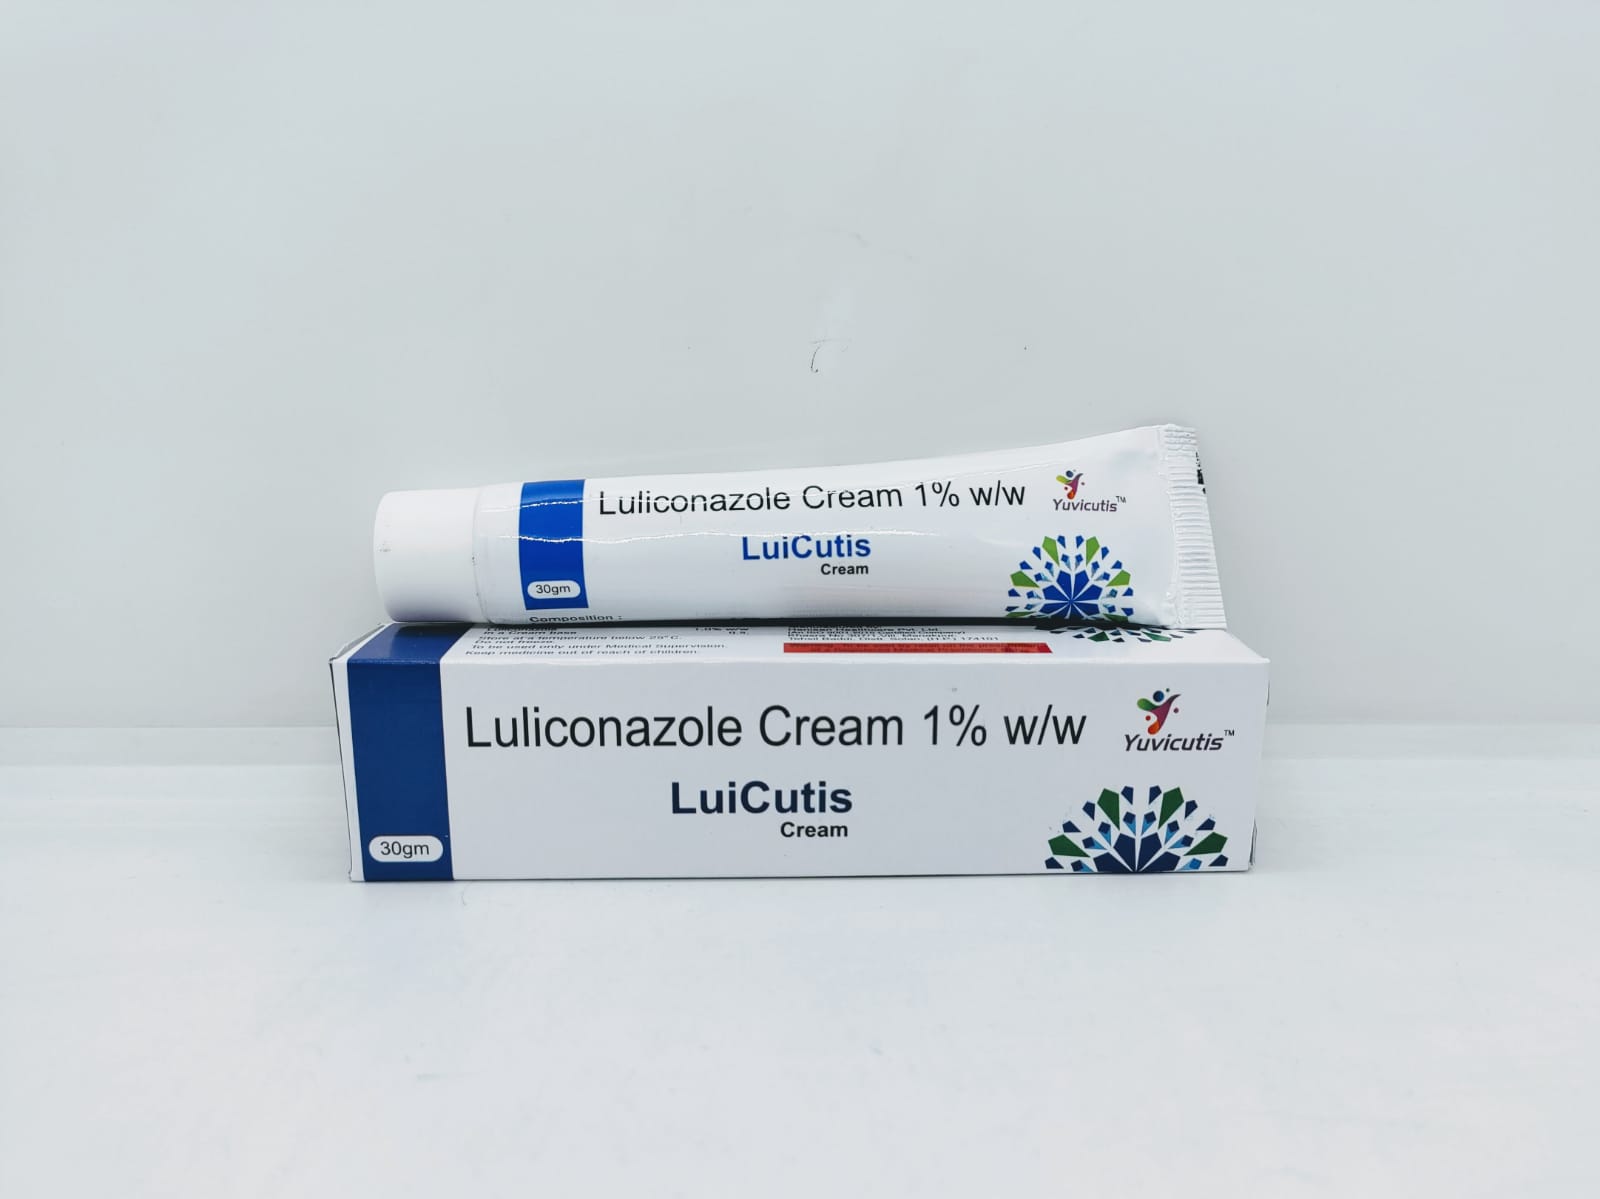 Luicutis Cream